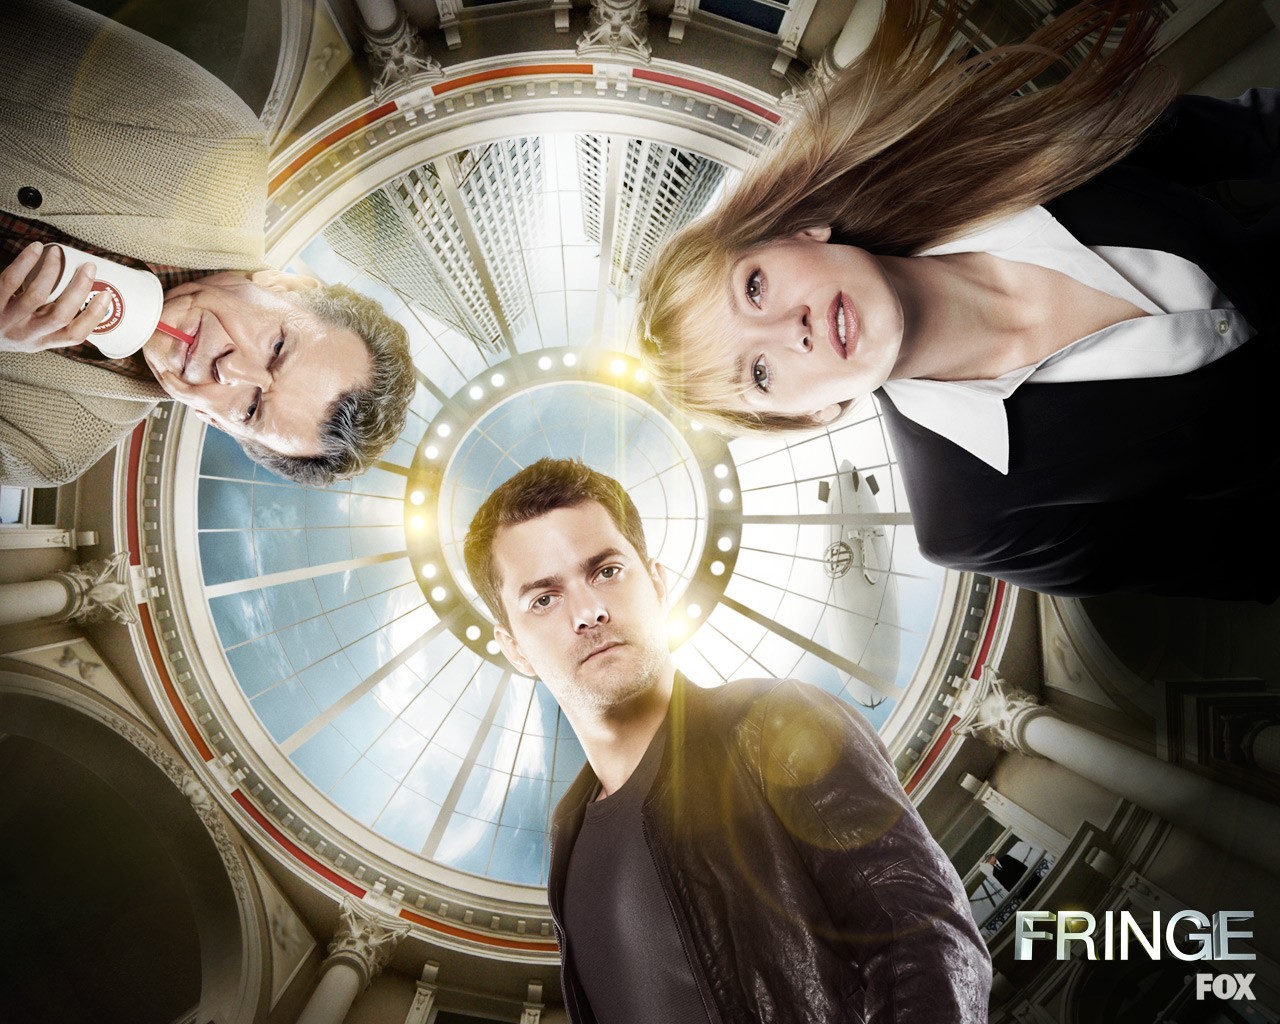 Fringe (TV Series) Wallpaper